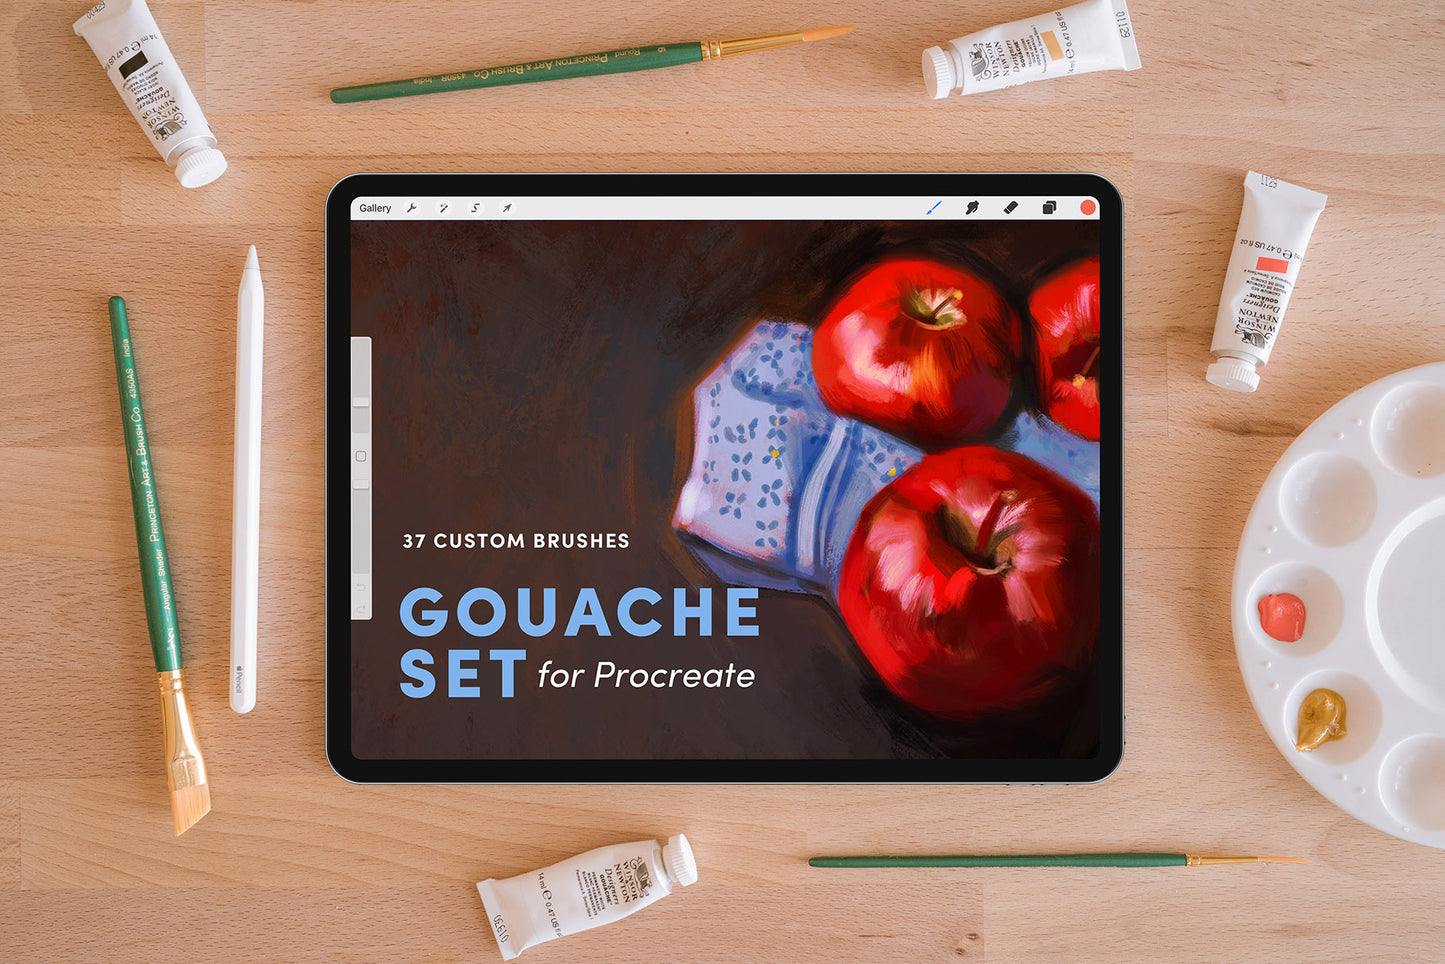 Gouache Set – Procreate Brushes